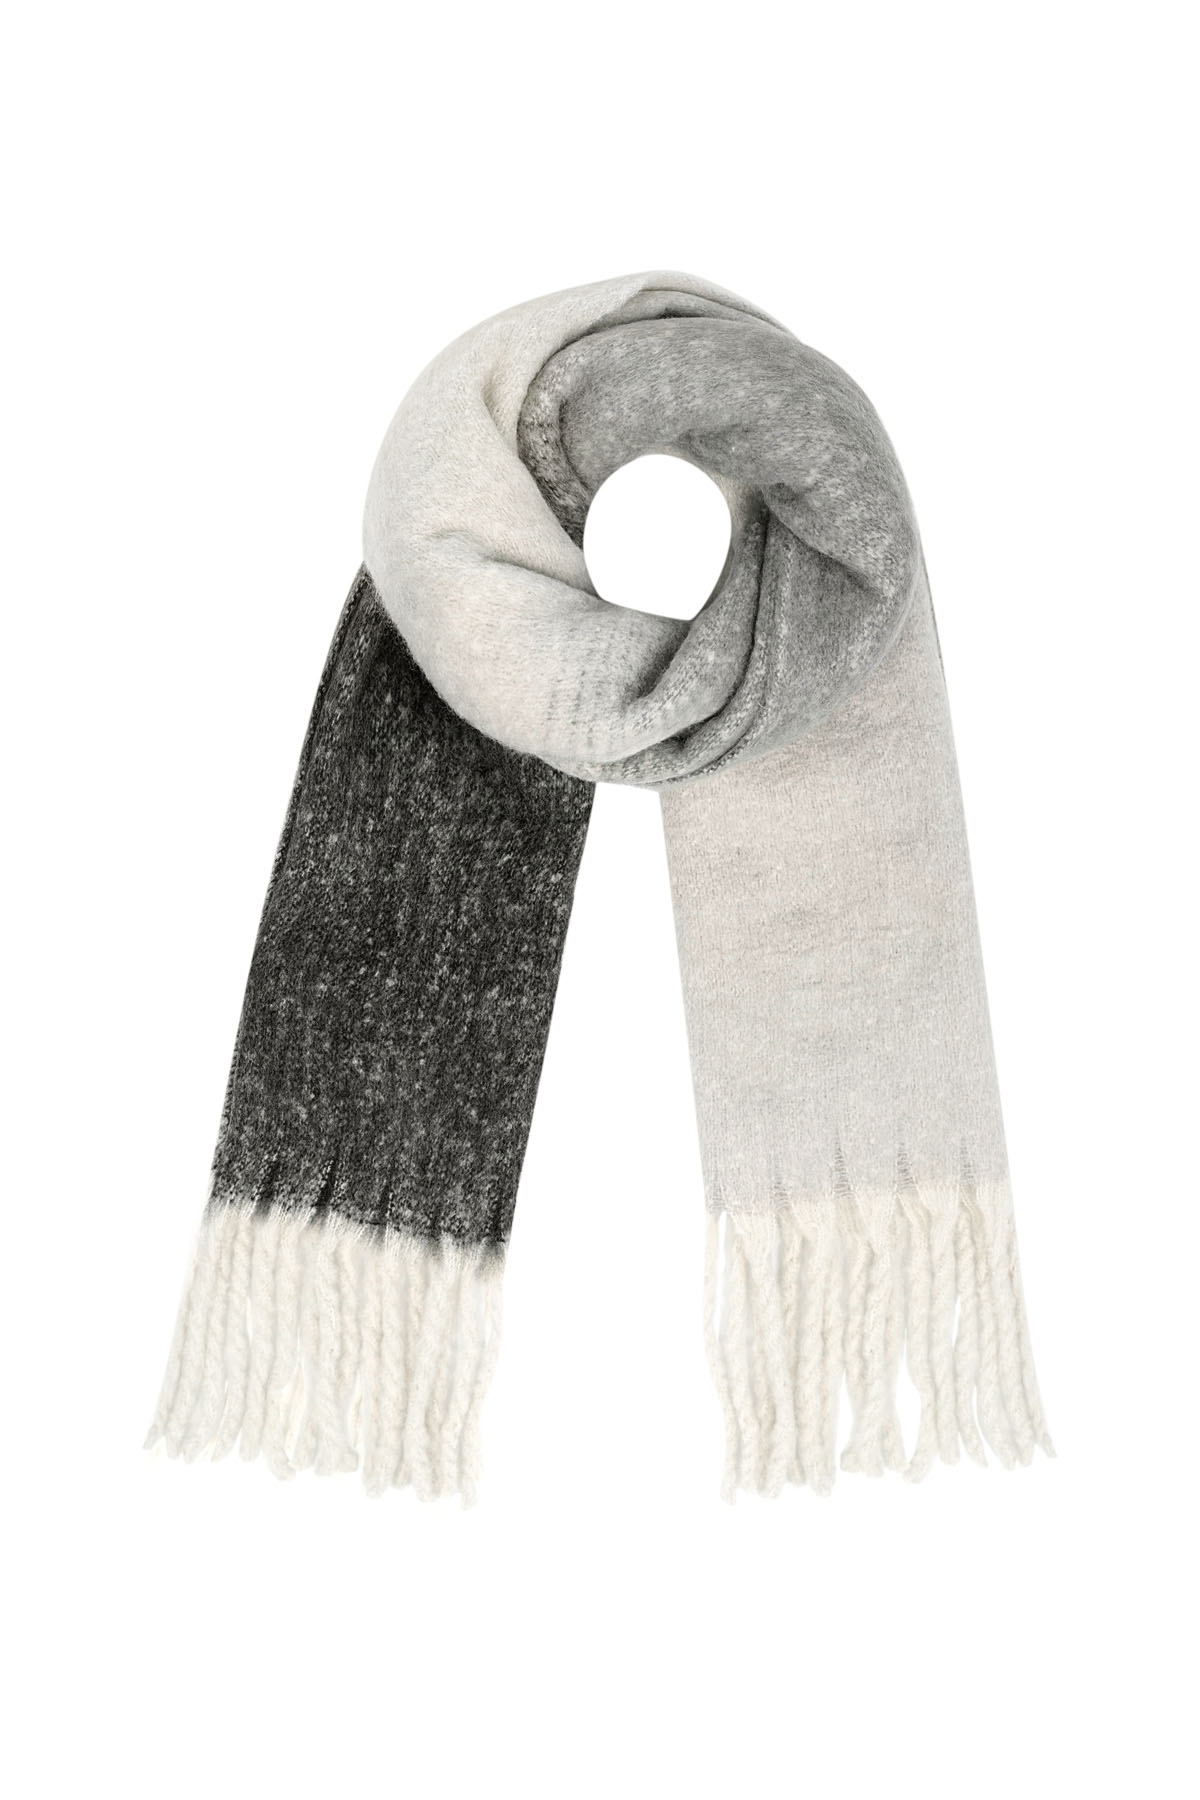 Farbiger Basic-Schal mit Schnüren - Schwarz und Weiß